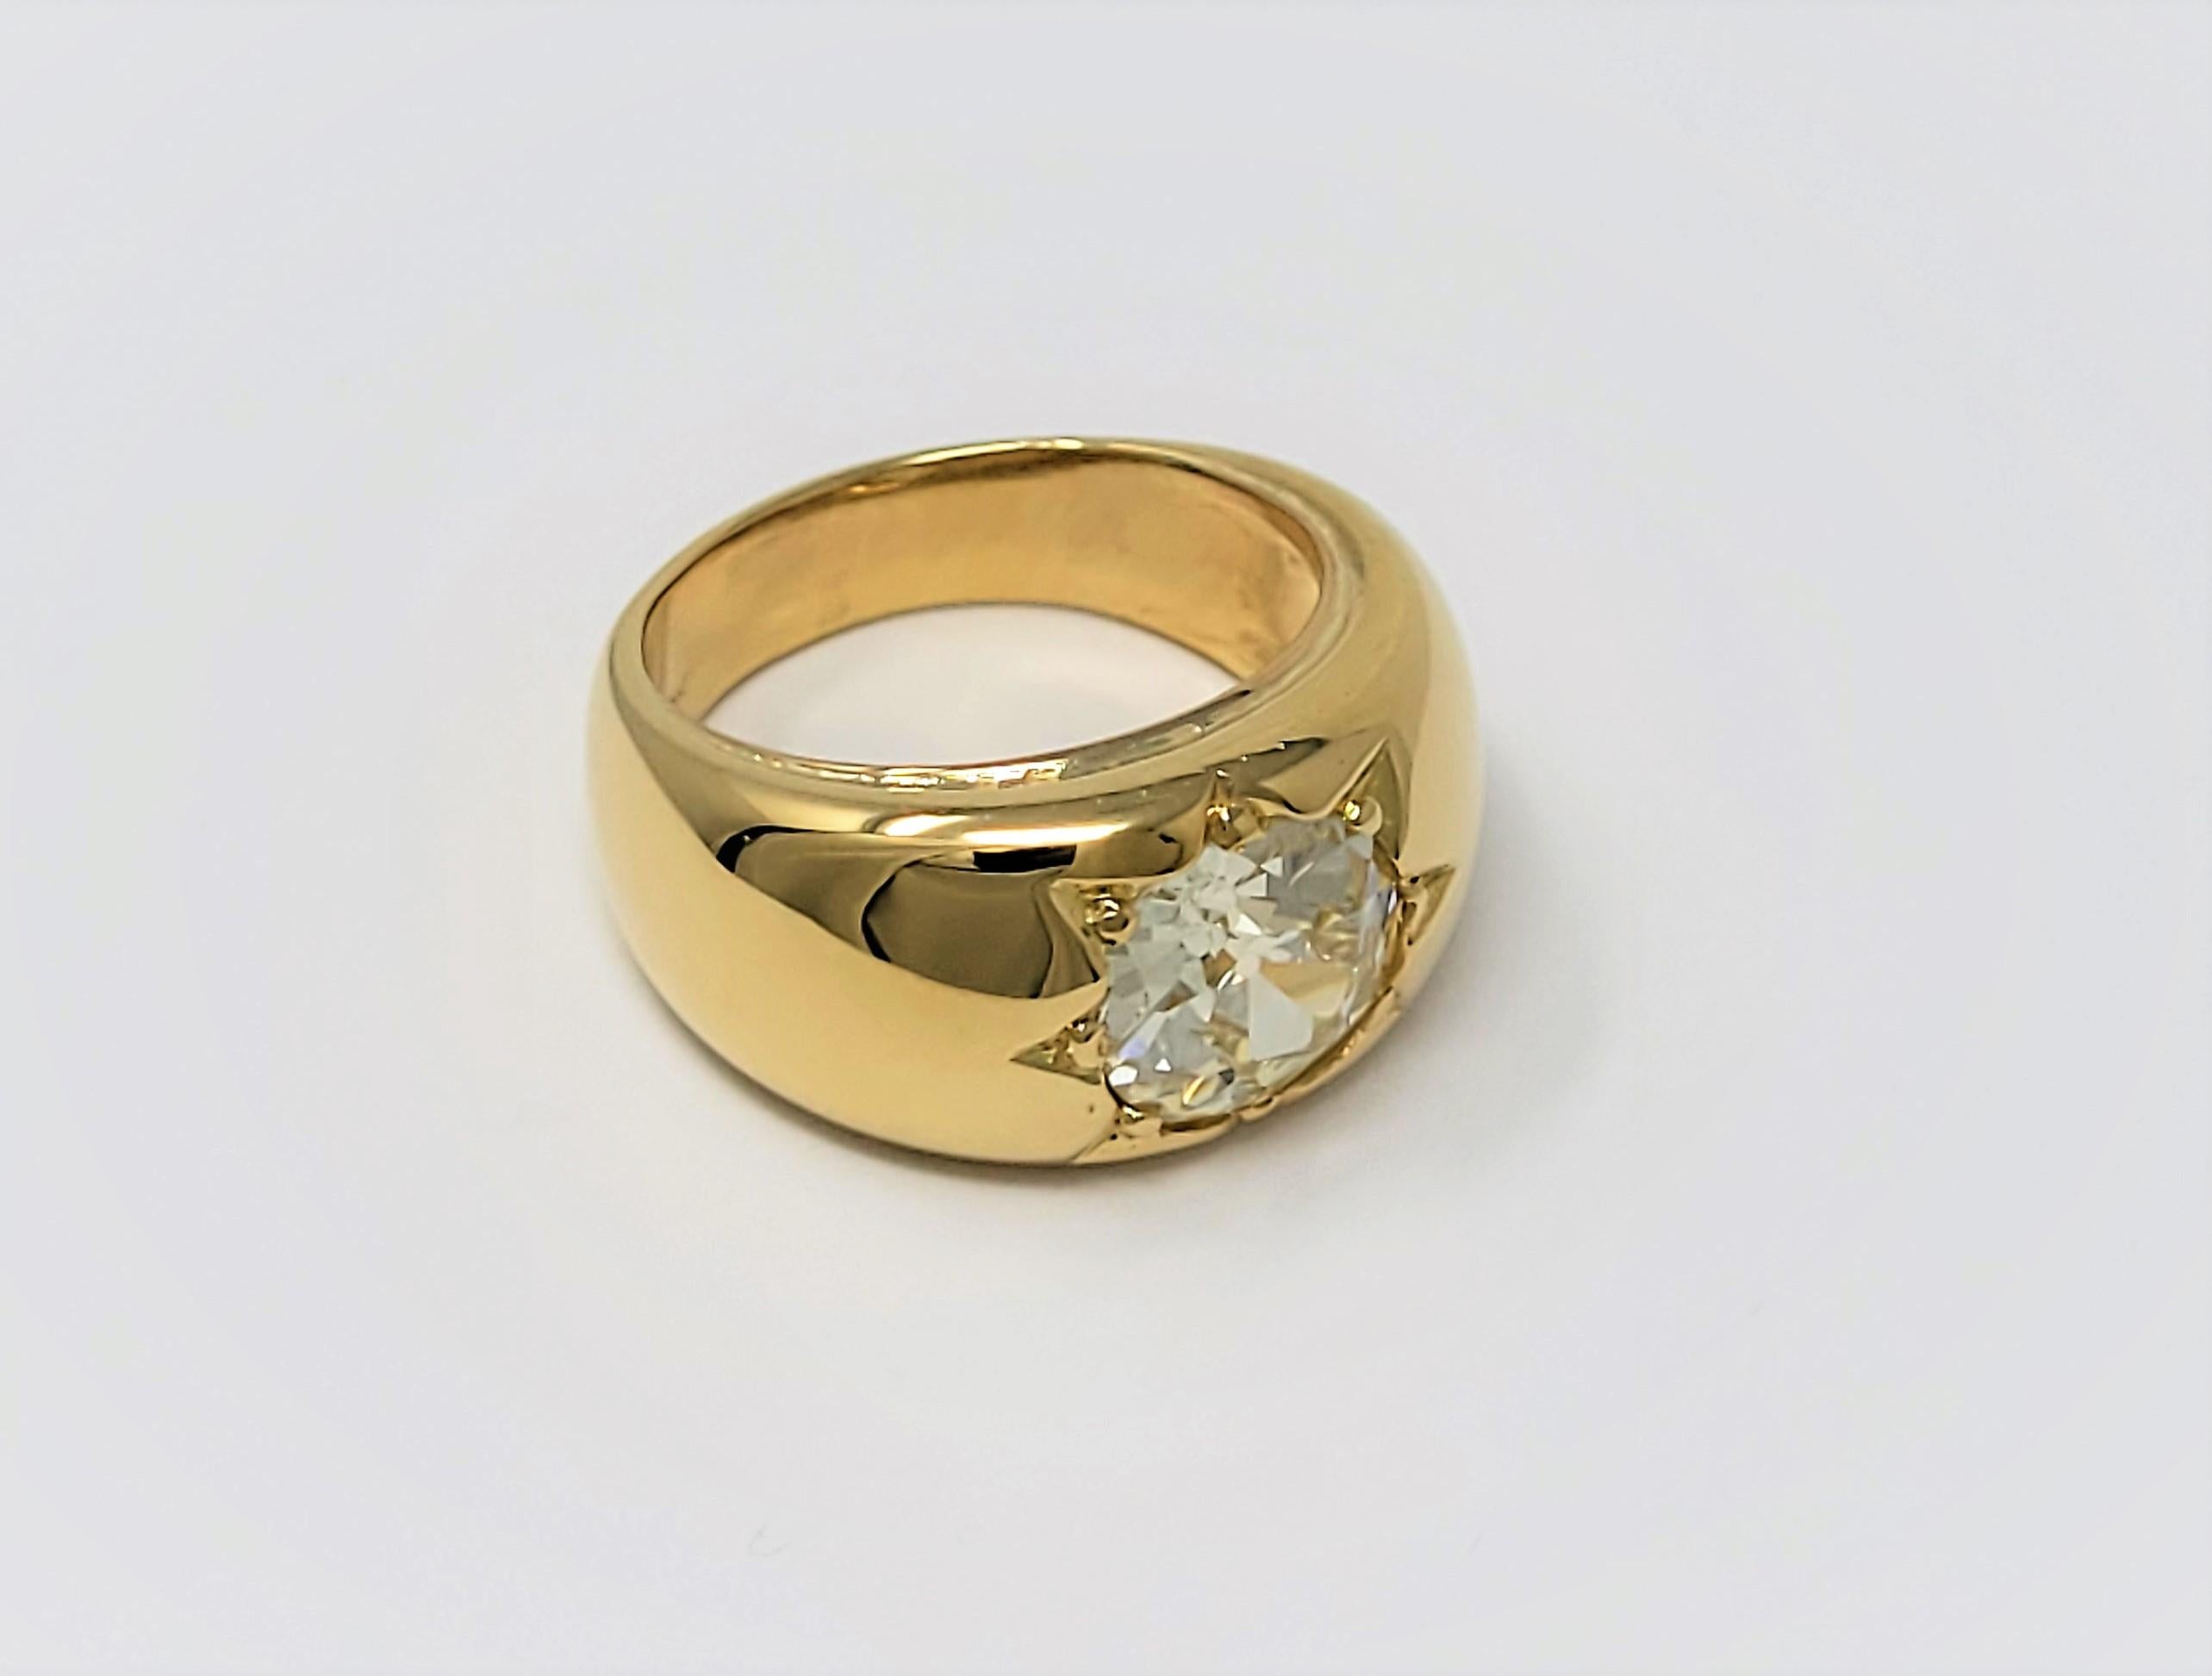 Retro 2.90 Carat Old European Cut Diamond Ring in 18 Karat Gold